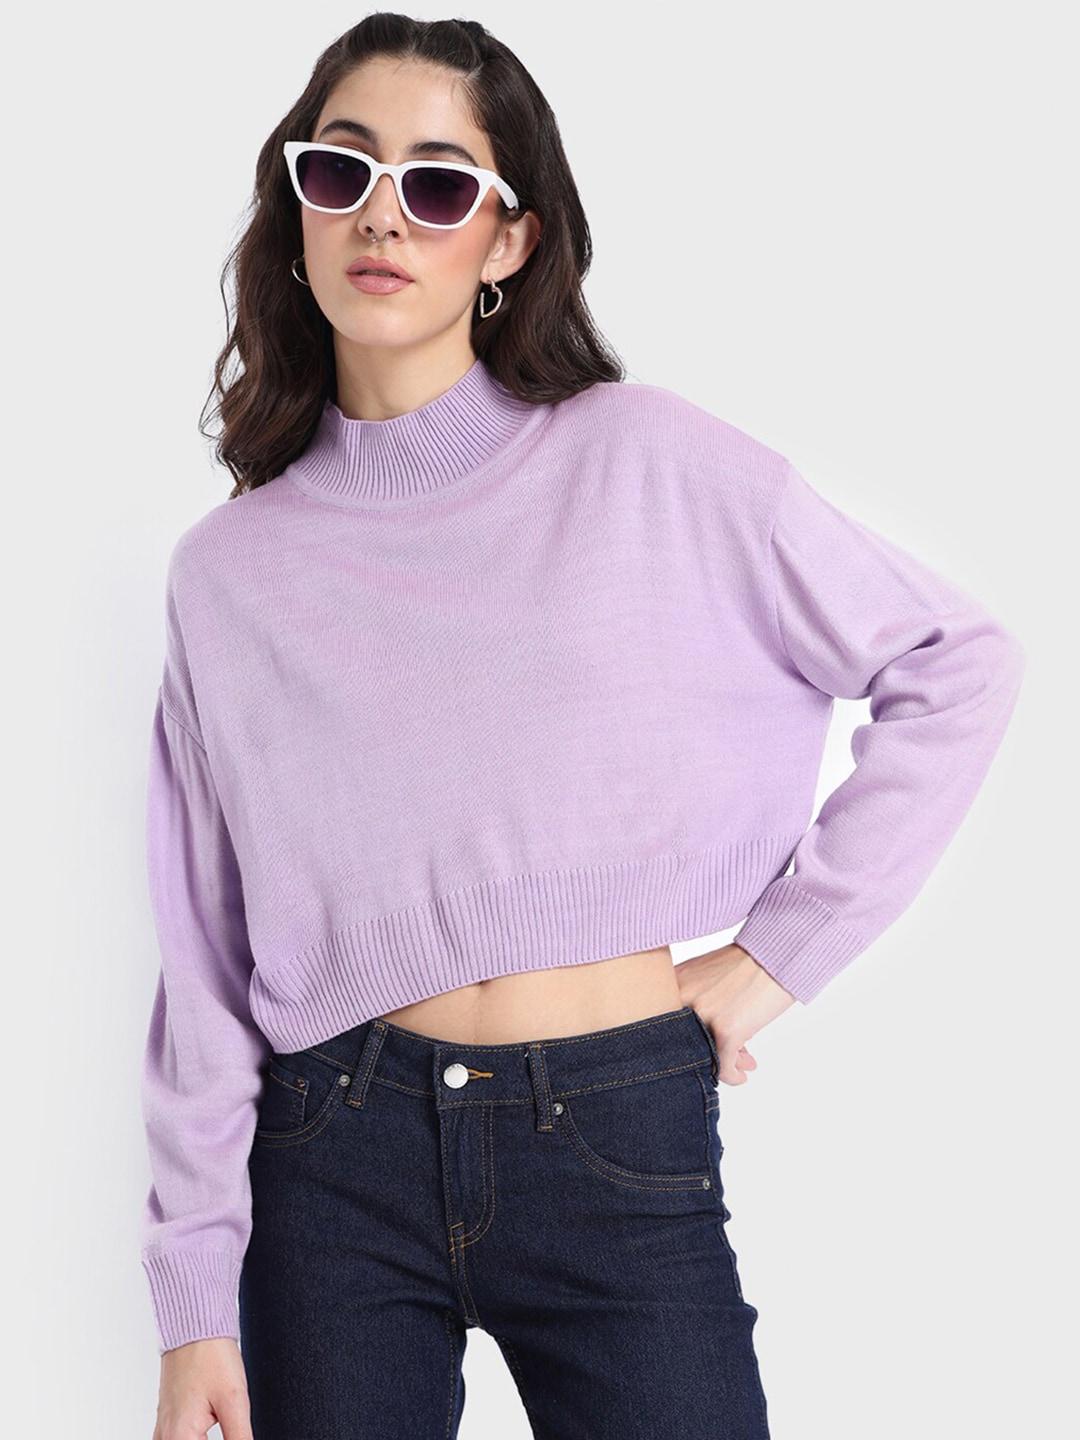 Bewakoof Women Acrylic Drop-Shoulder Sleeves Crop Sweater